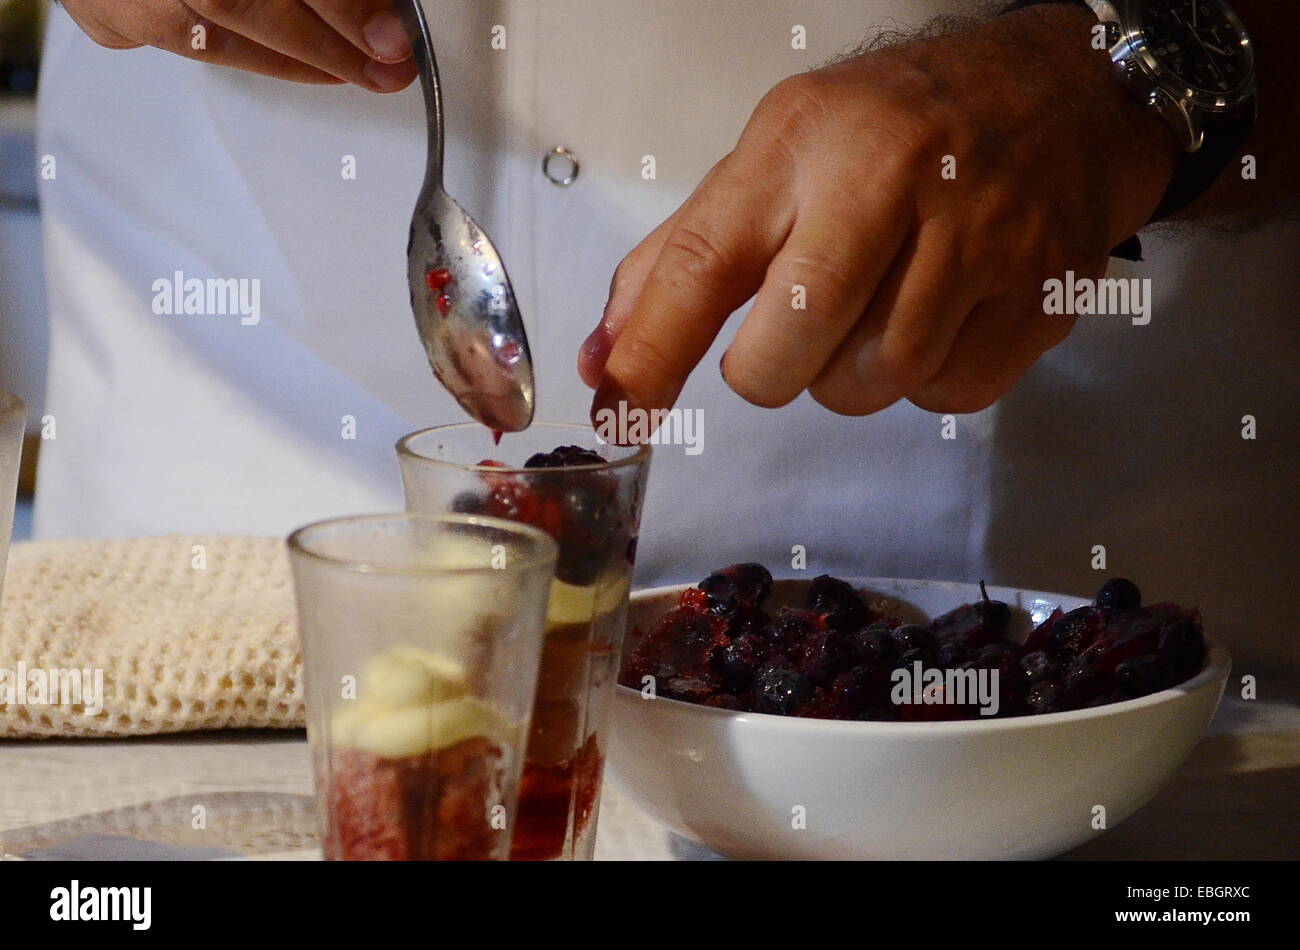 Chef preparando le mani con gelato alla vaniglia con frutti rossi Foto Stock